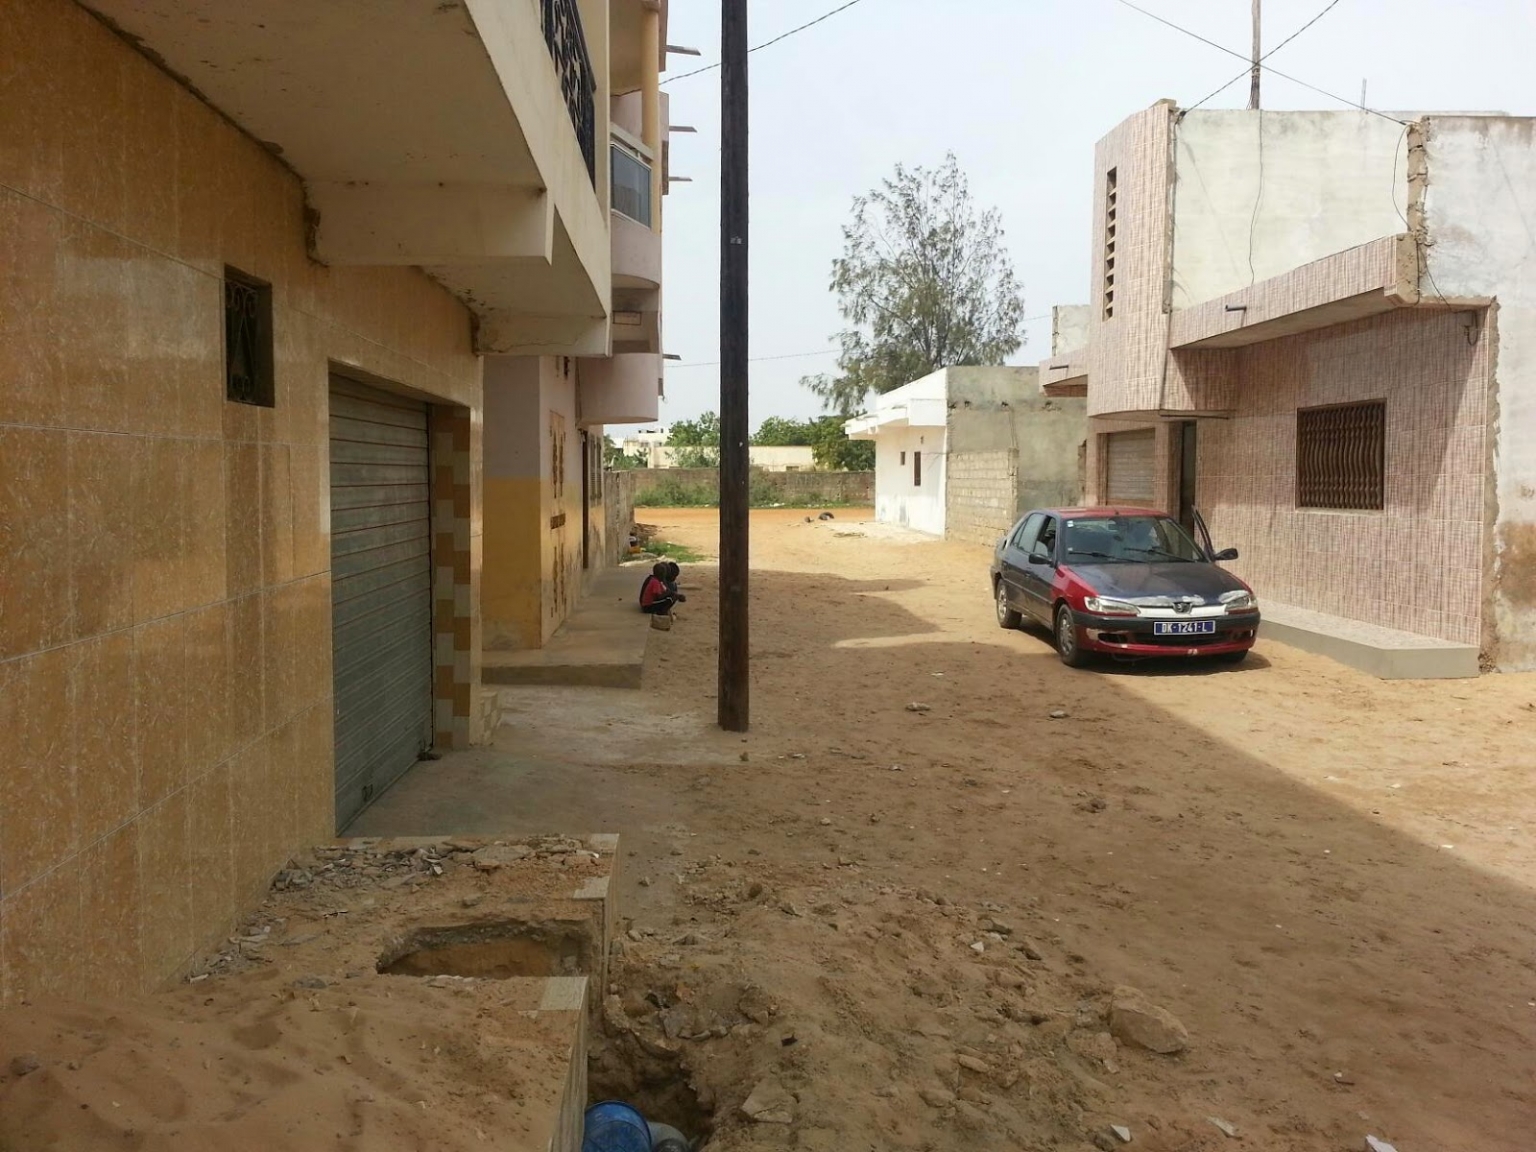 Cité Darou Salam 2 extension : 4000 habitants menacés d’expulsion prêts à y laisser leur vie